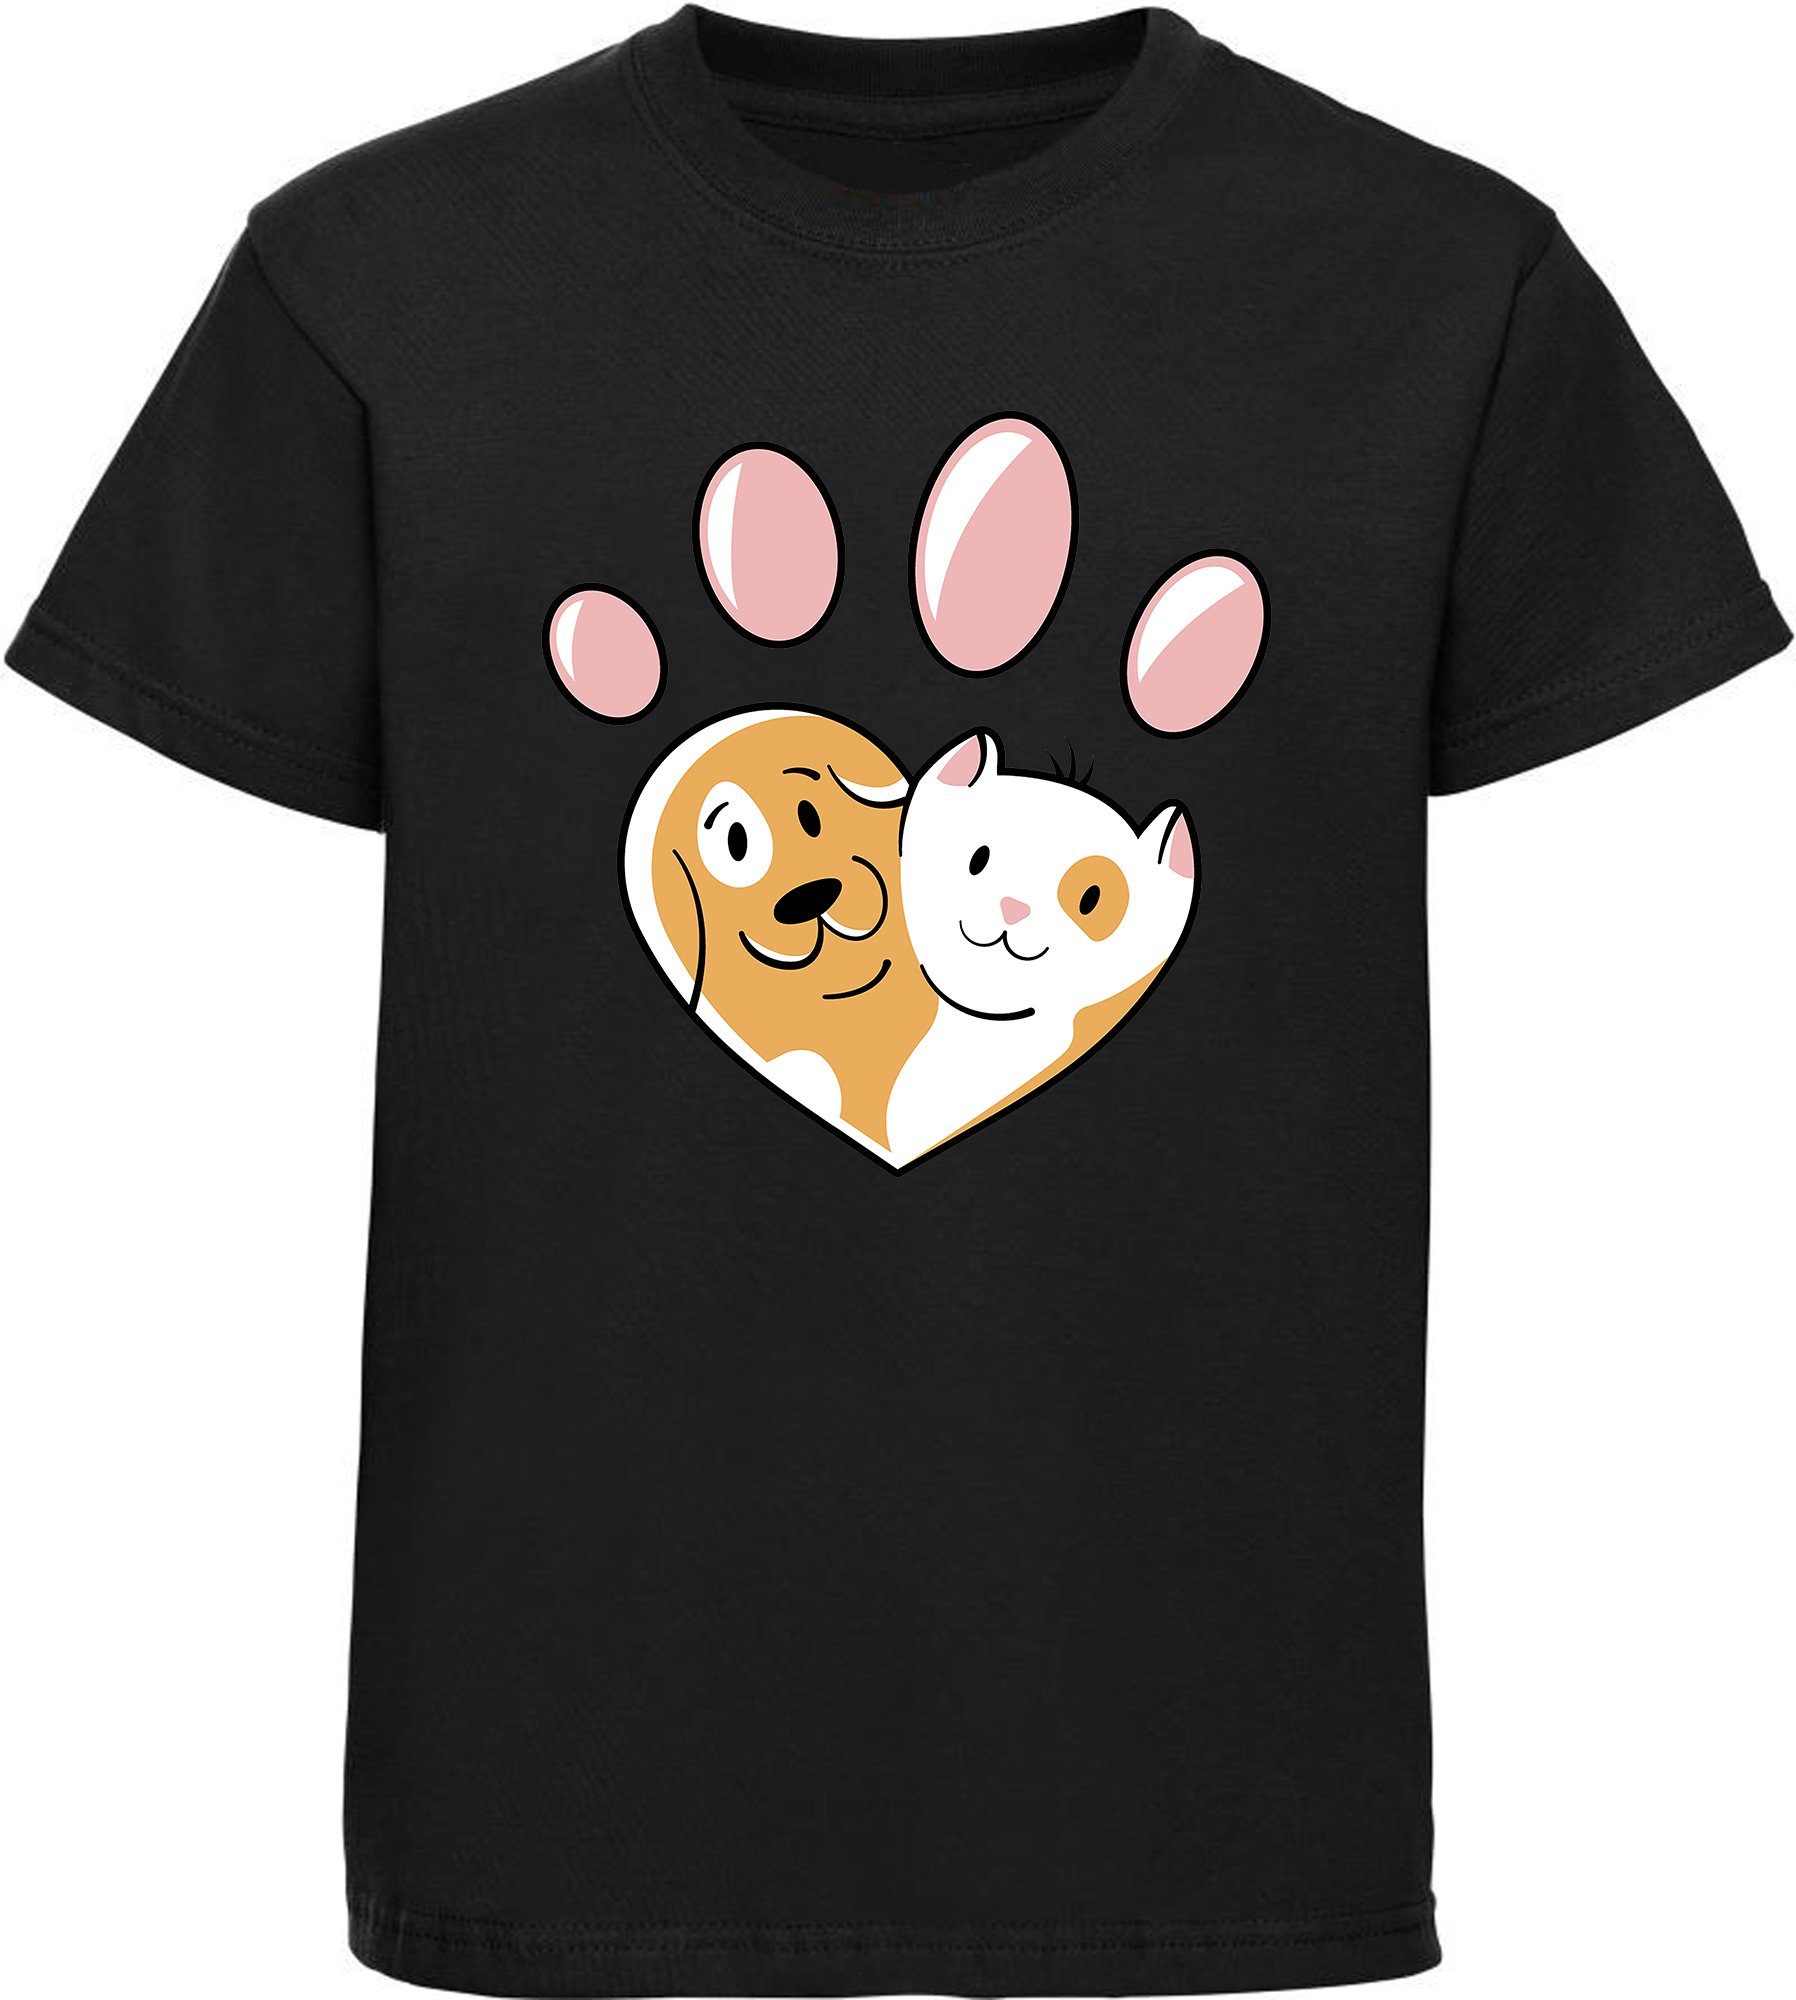 MyDesign24 Print-Shirt bedrucktes Kinder Hunde T-Shirt - Herz Pfote mit Hund und Katze Baumwollshirt mit Aufdruck, i223 schwarz